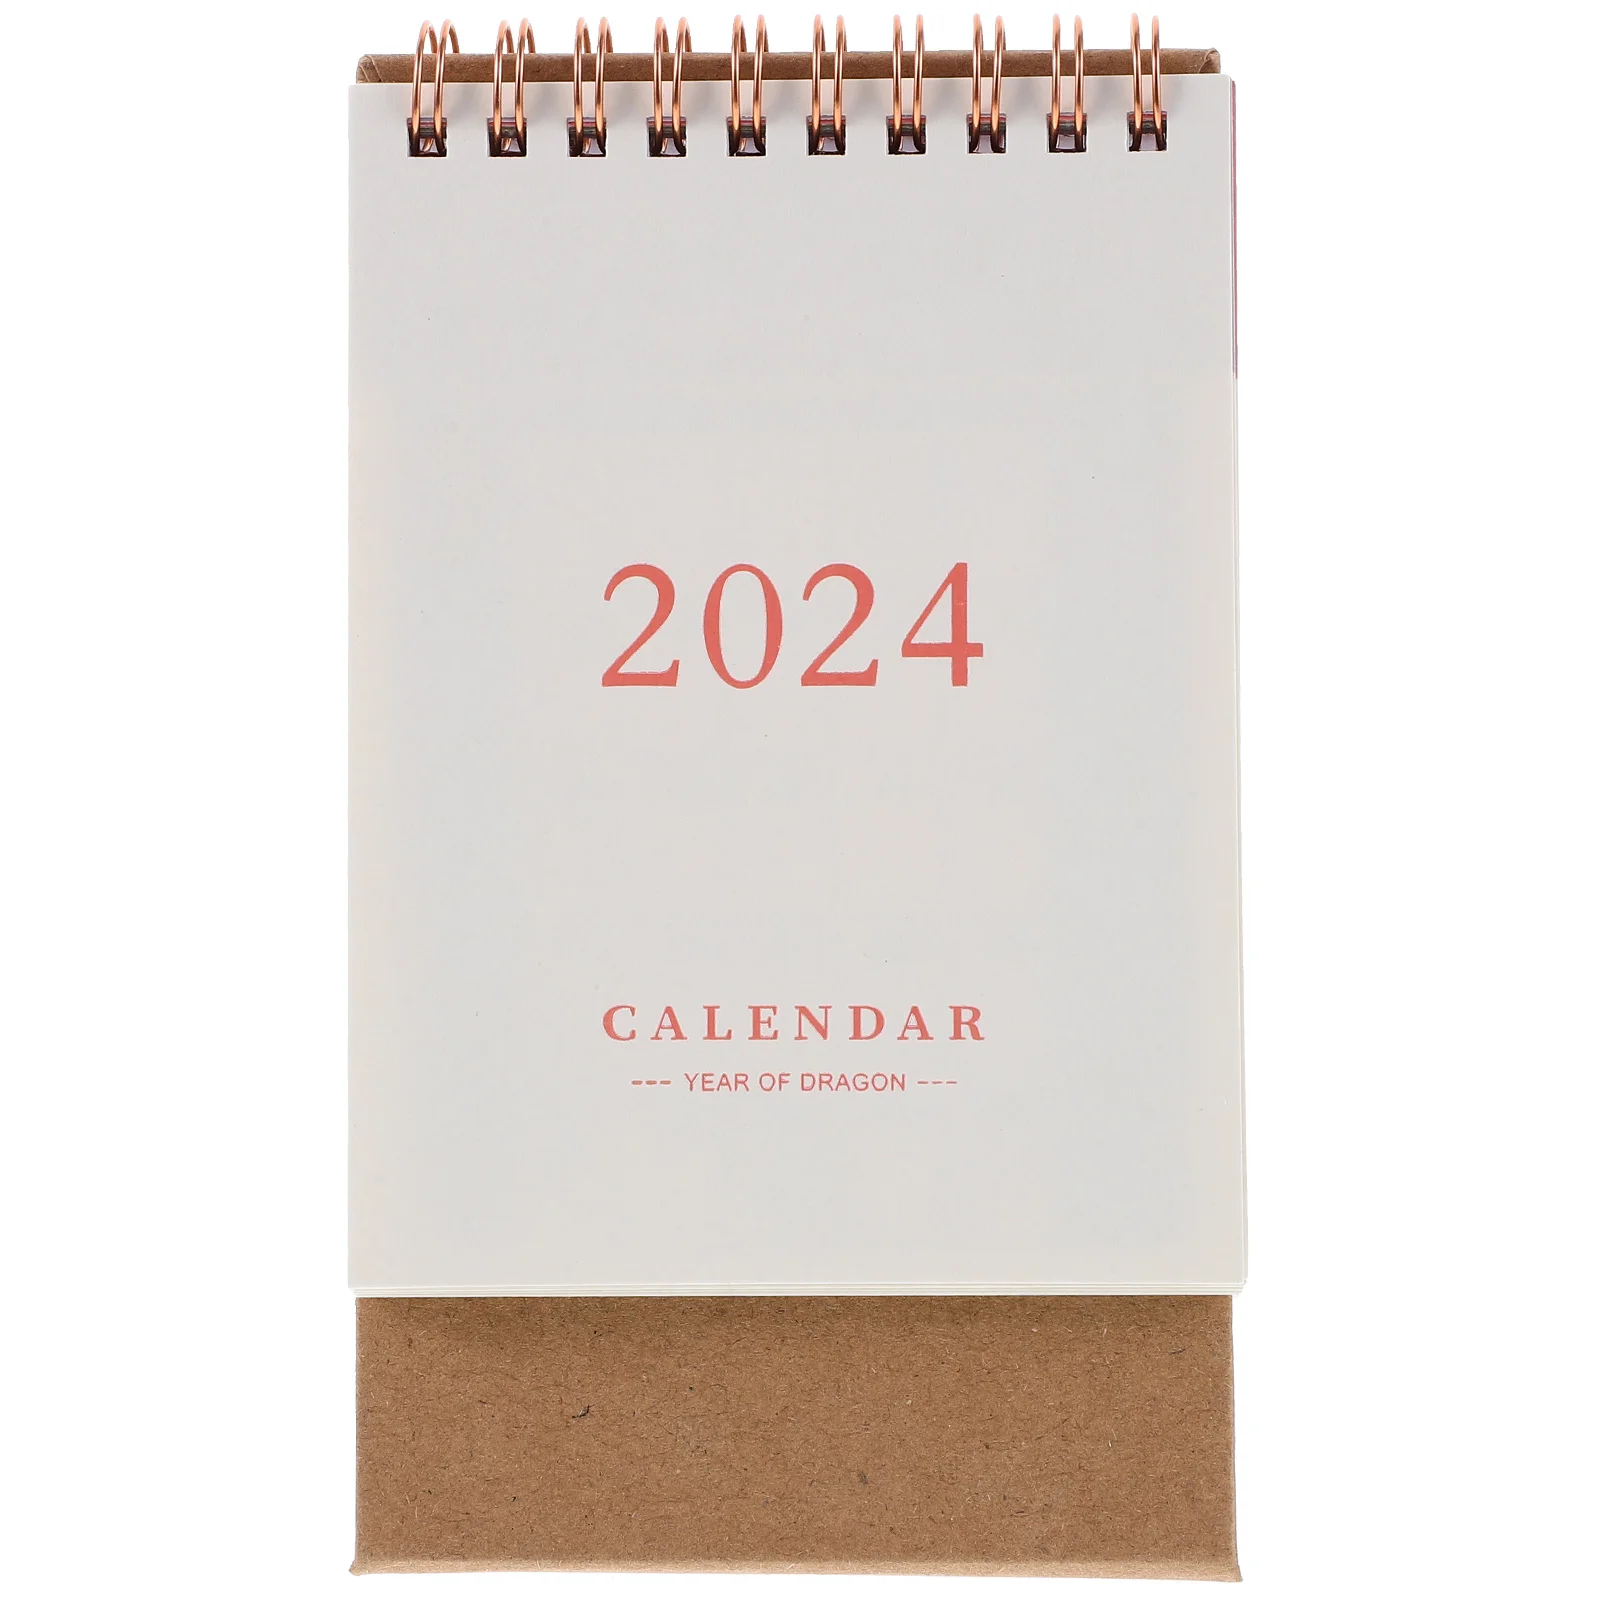 2024 מיני השולחן ספירה לאחור לוח שנה במשרד עיצוב שולחן העבודה משטח אנכי לוחות שנה - 1